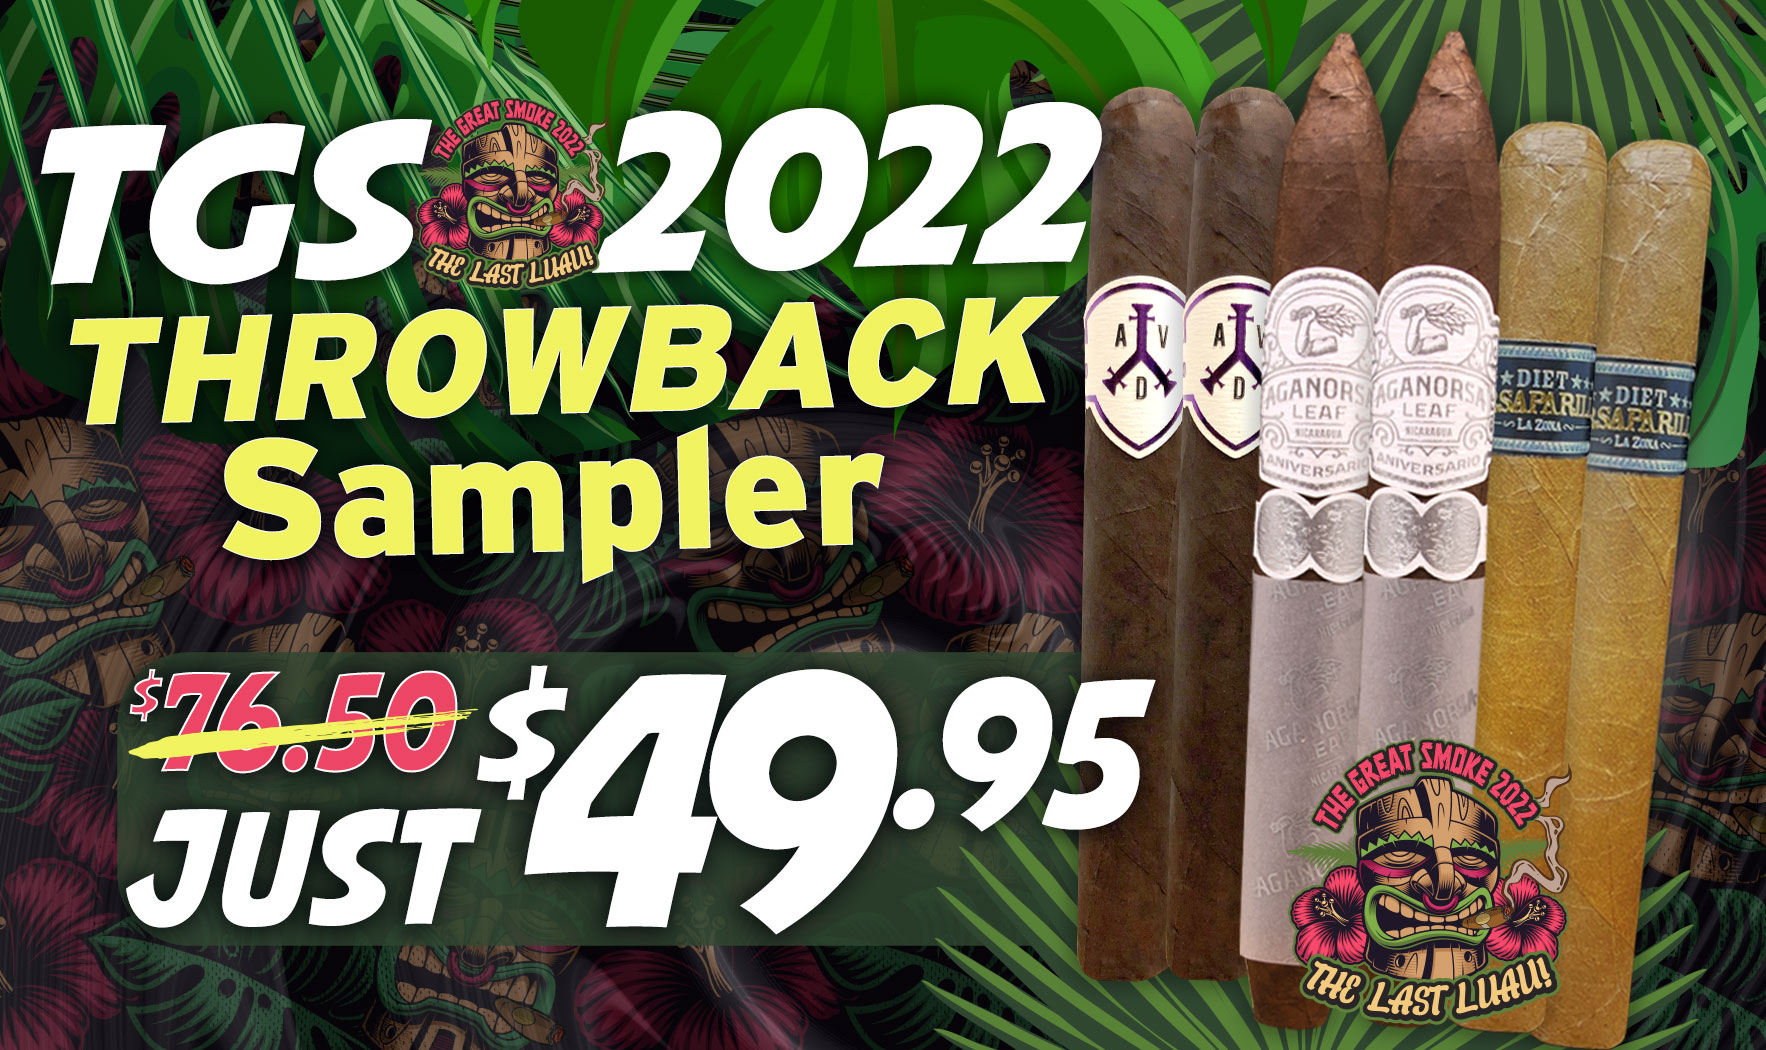 TGS 2022 Throwback Sampler - 6 Cigars